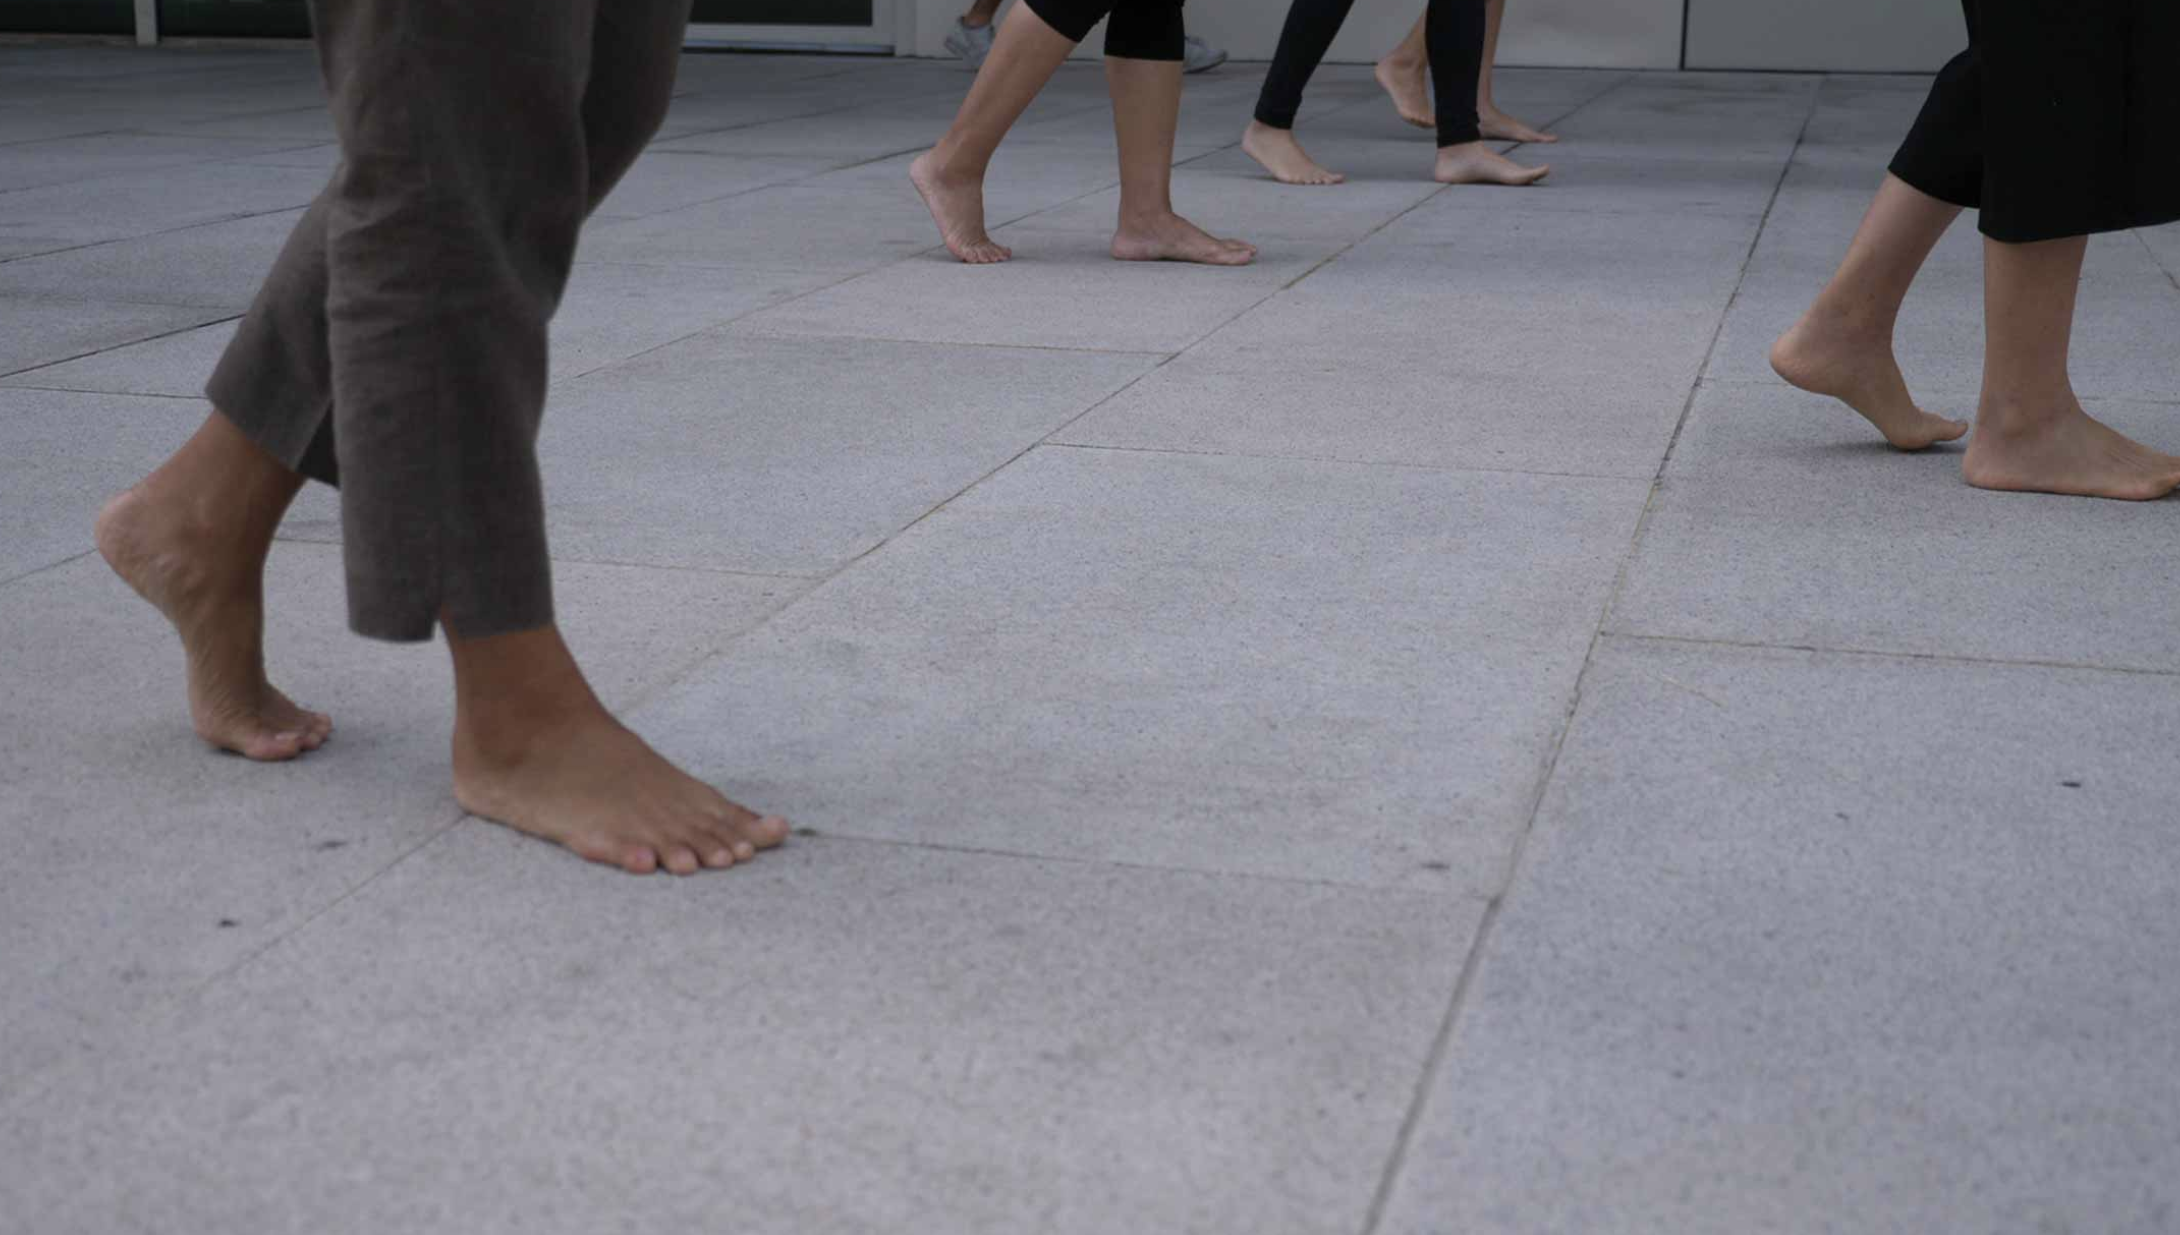 people's feet walking